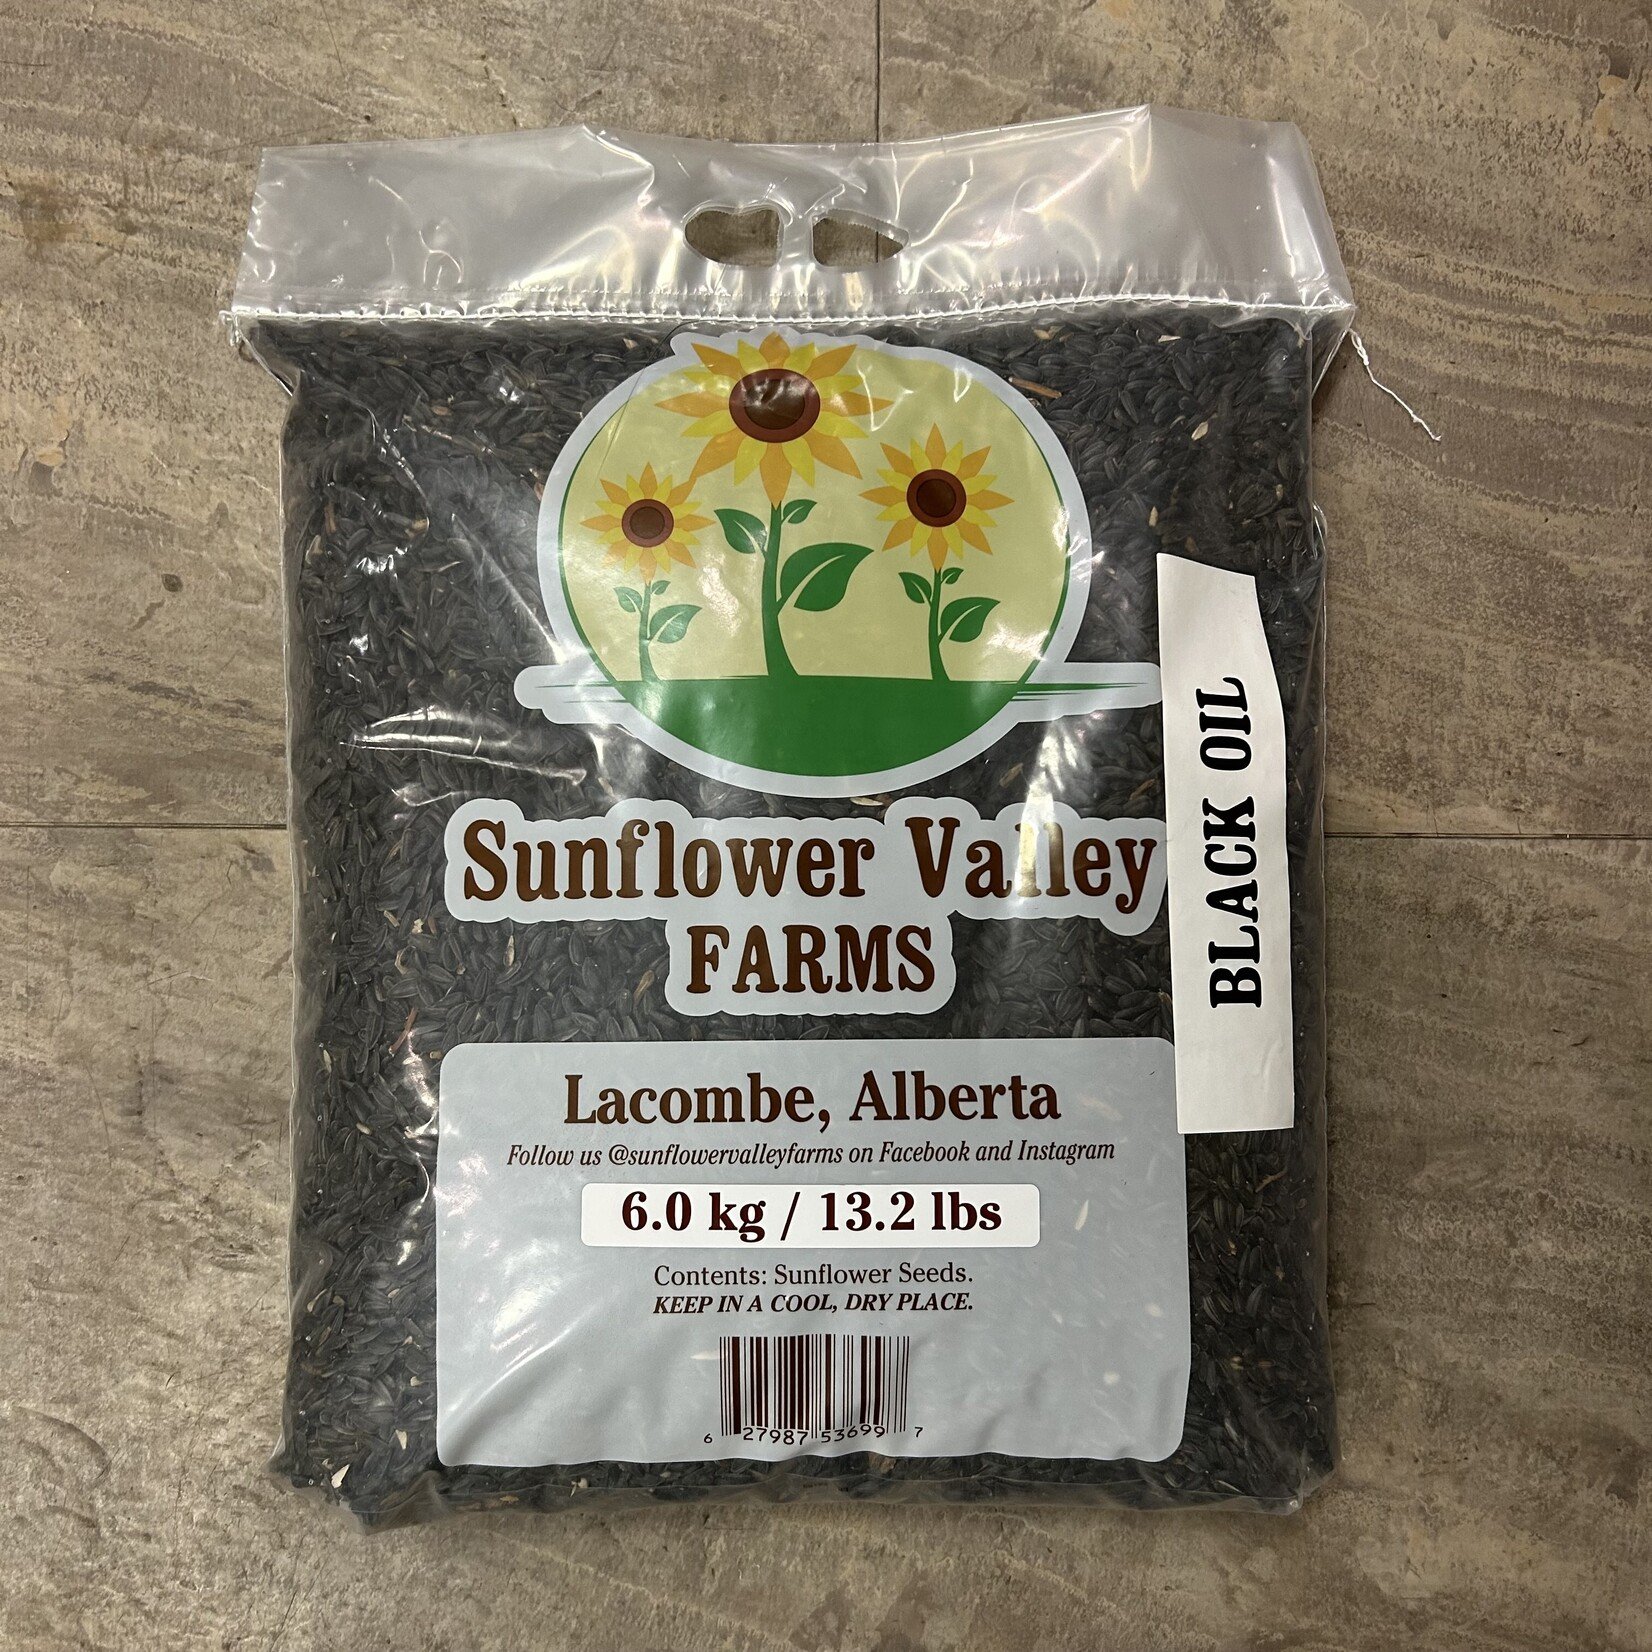 Black Oil Sunflower